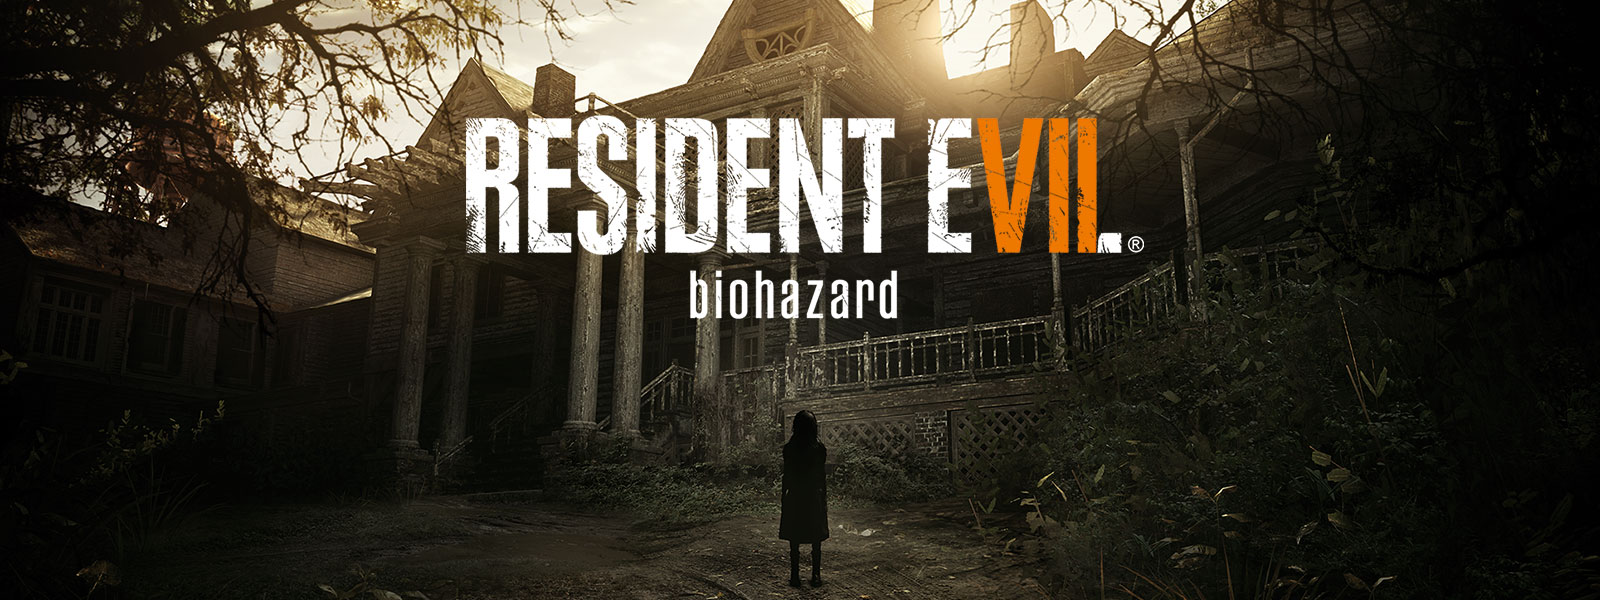 Imagen de la caja de Resident Evil 7 Biohazard Gold Edition sobre una escena de una niña parada delante de una casa hechizada